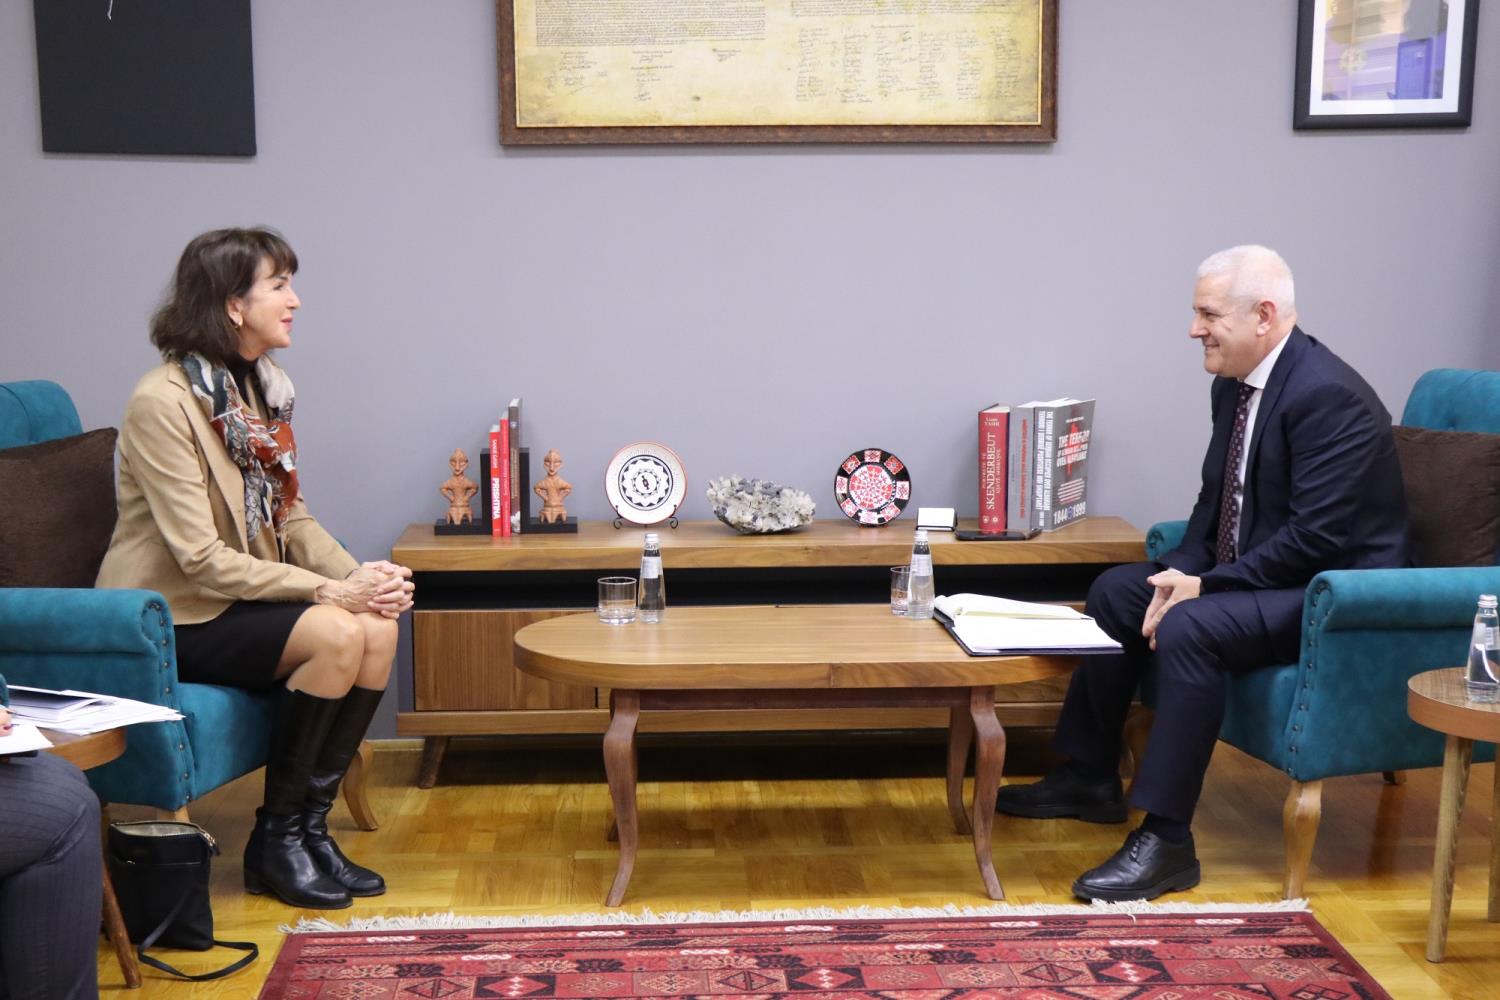 Ministri Sveçla takoi Koordinatoren e Kombeve të Bashkuara për Zhvillim në Kosovë, Arnhild Spence